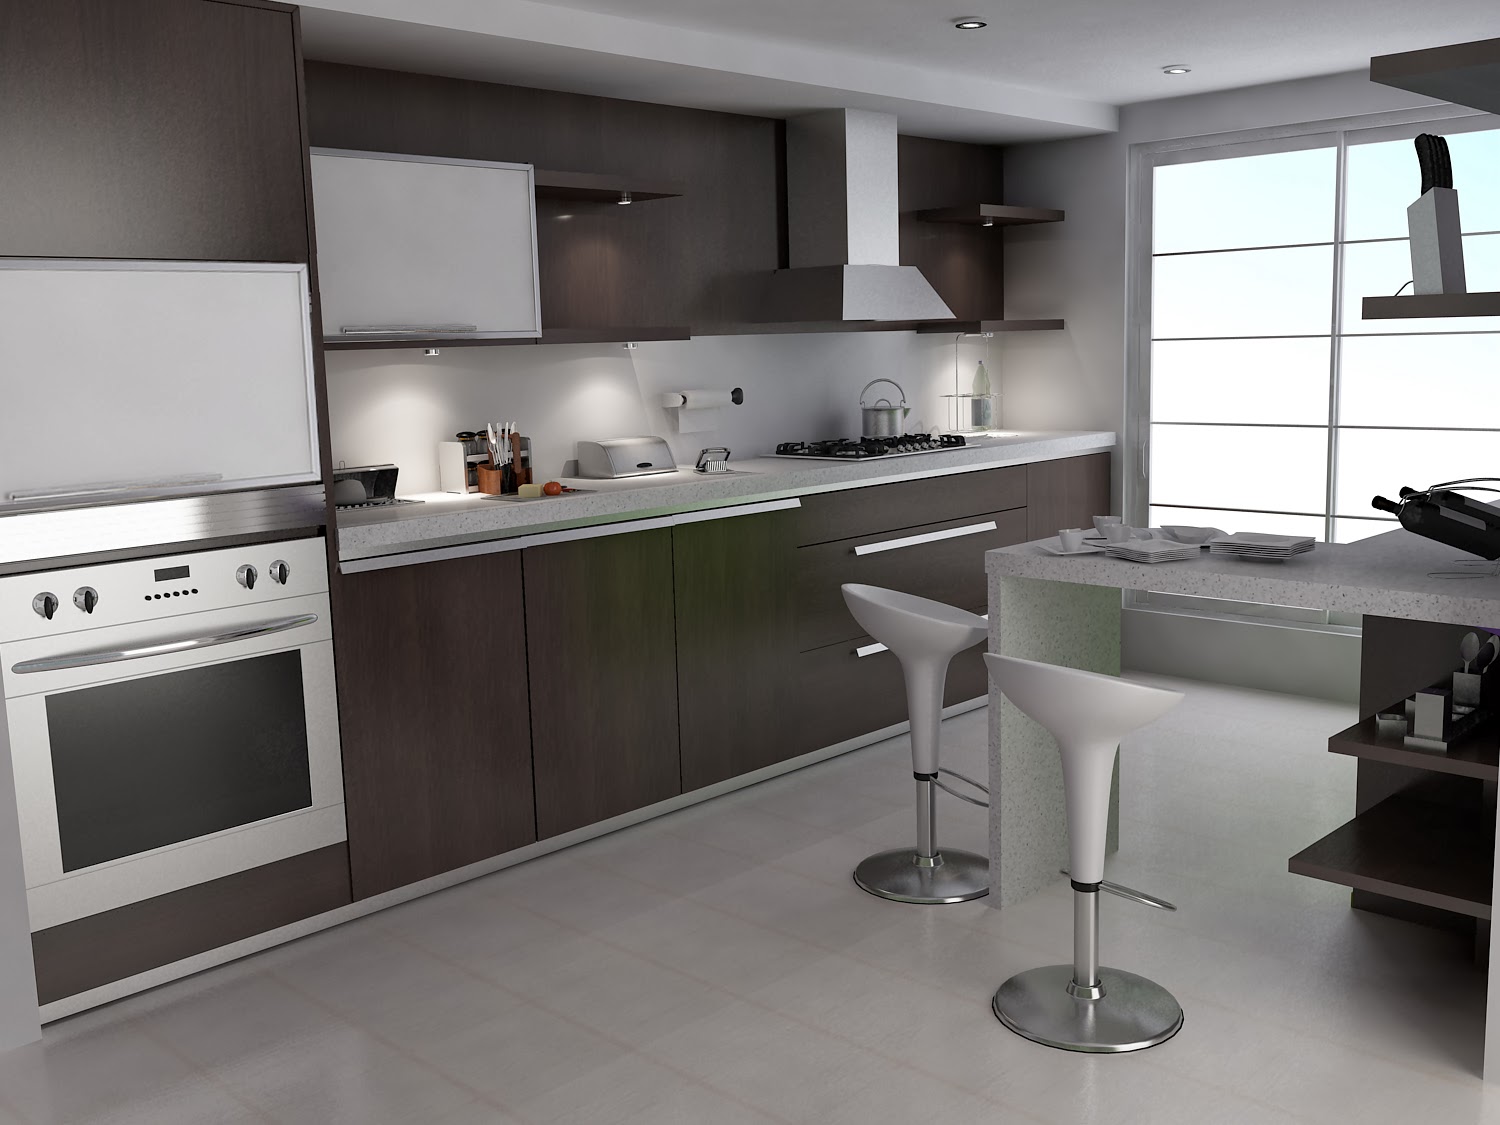 Small Kitchen Interior Design | Model Home Interiors